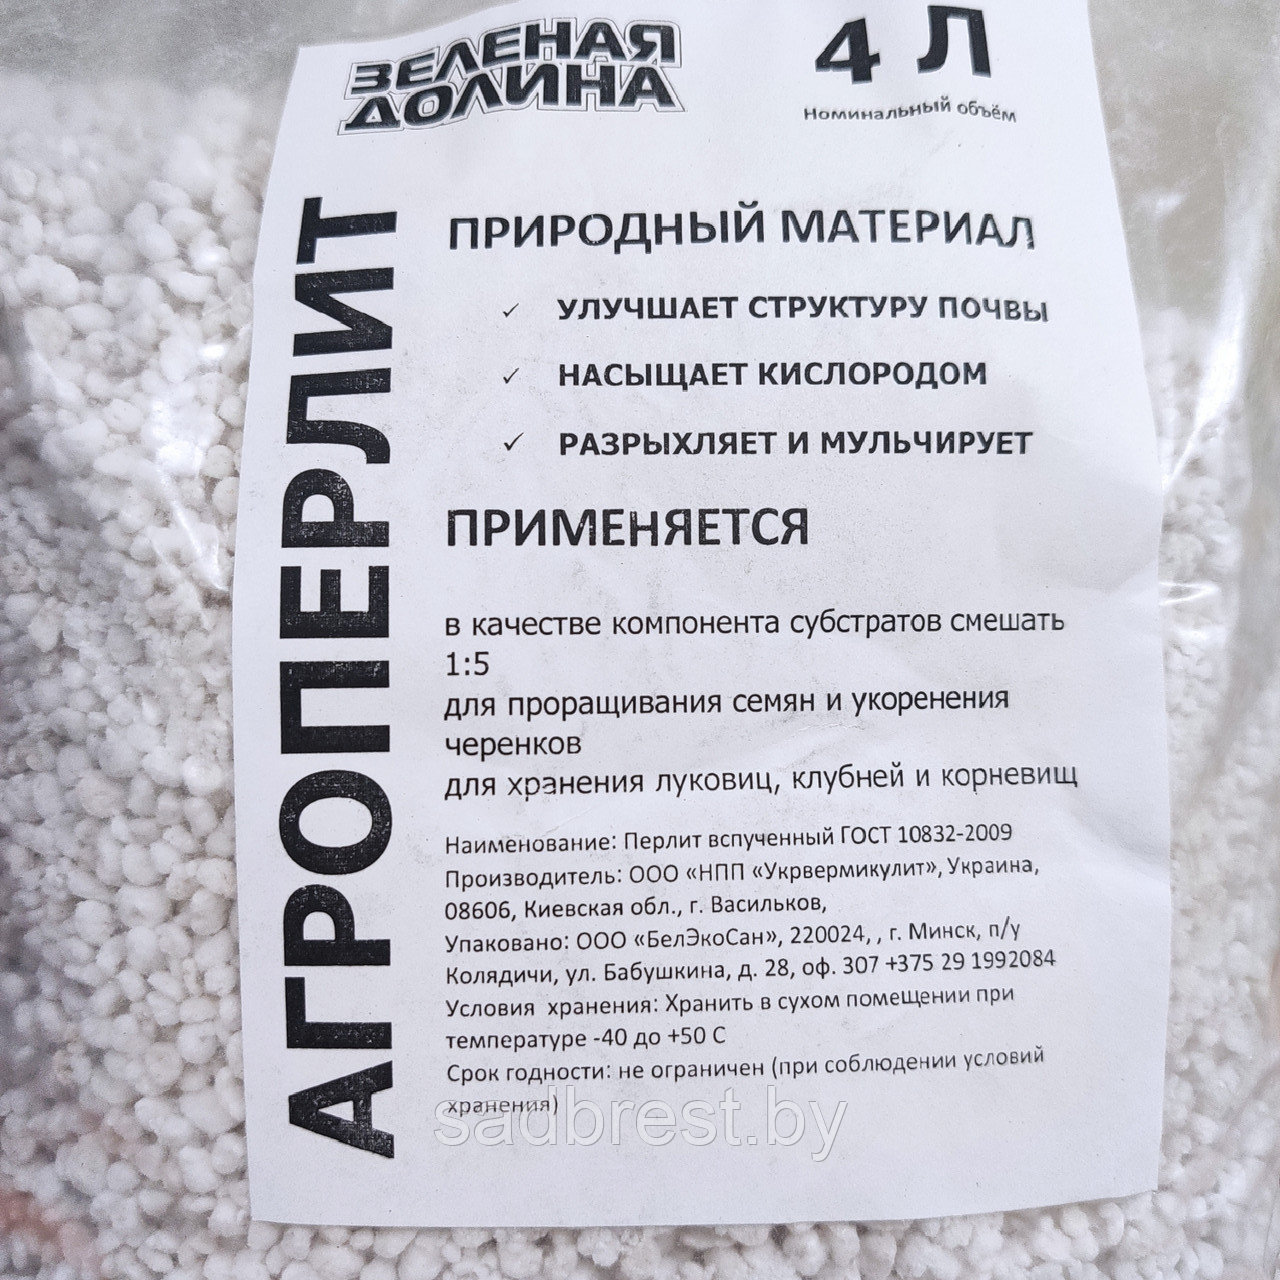 Перлит вспученный агроперлит минеральная добавка в почву 4 л